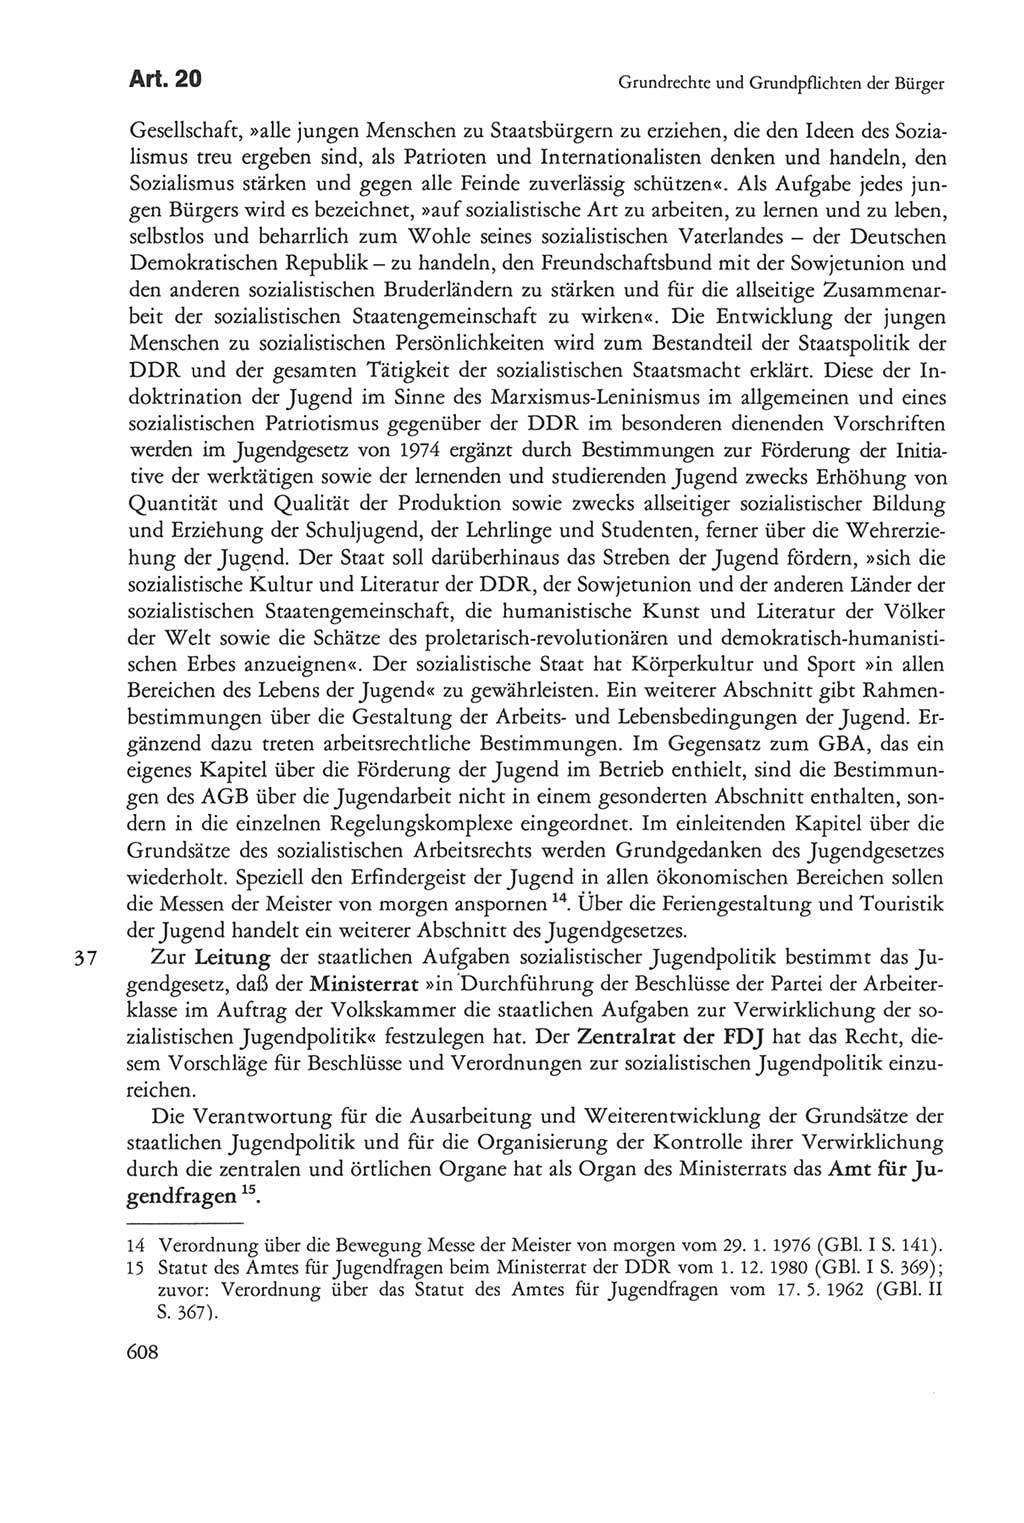 Die sozialistische Verfassung der Deutschen Demokratischen Republik (DDR), Kommentar 1982, Seite 608 (Soz. Verf. DDR Komm. 1982, S. 608)